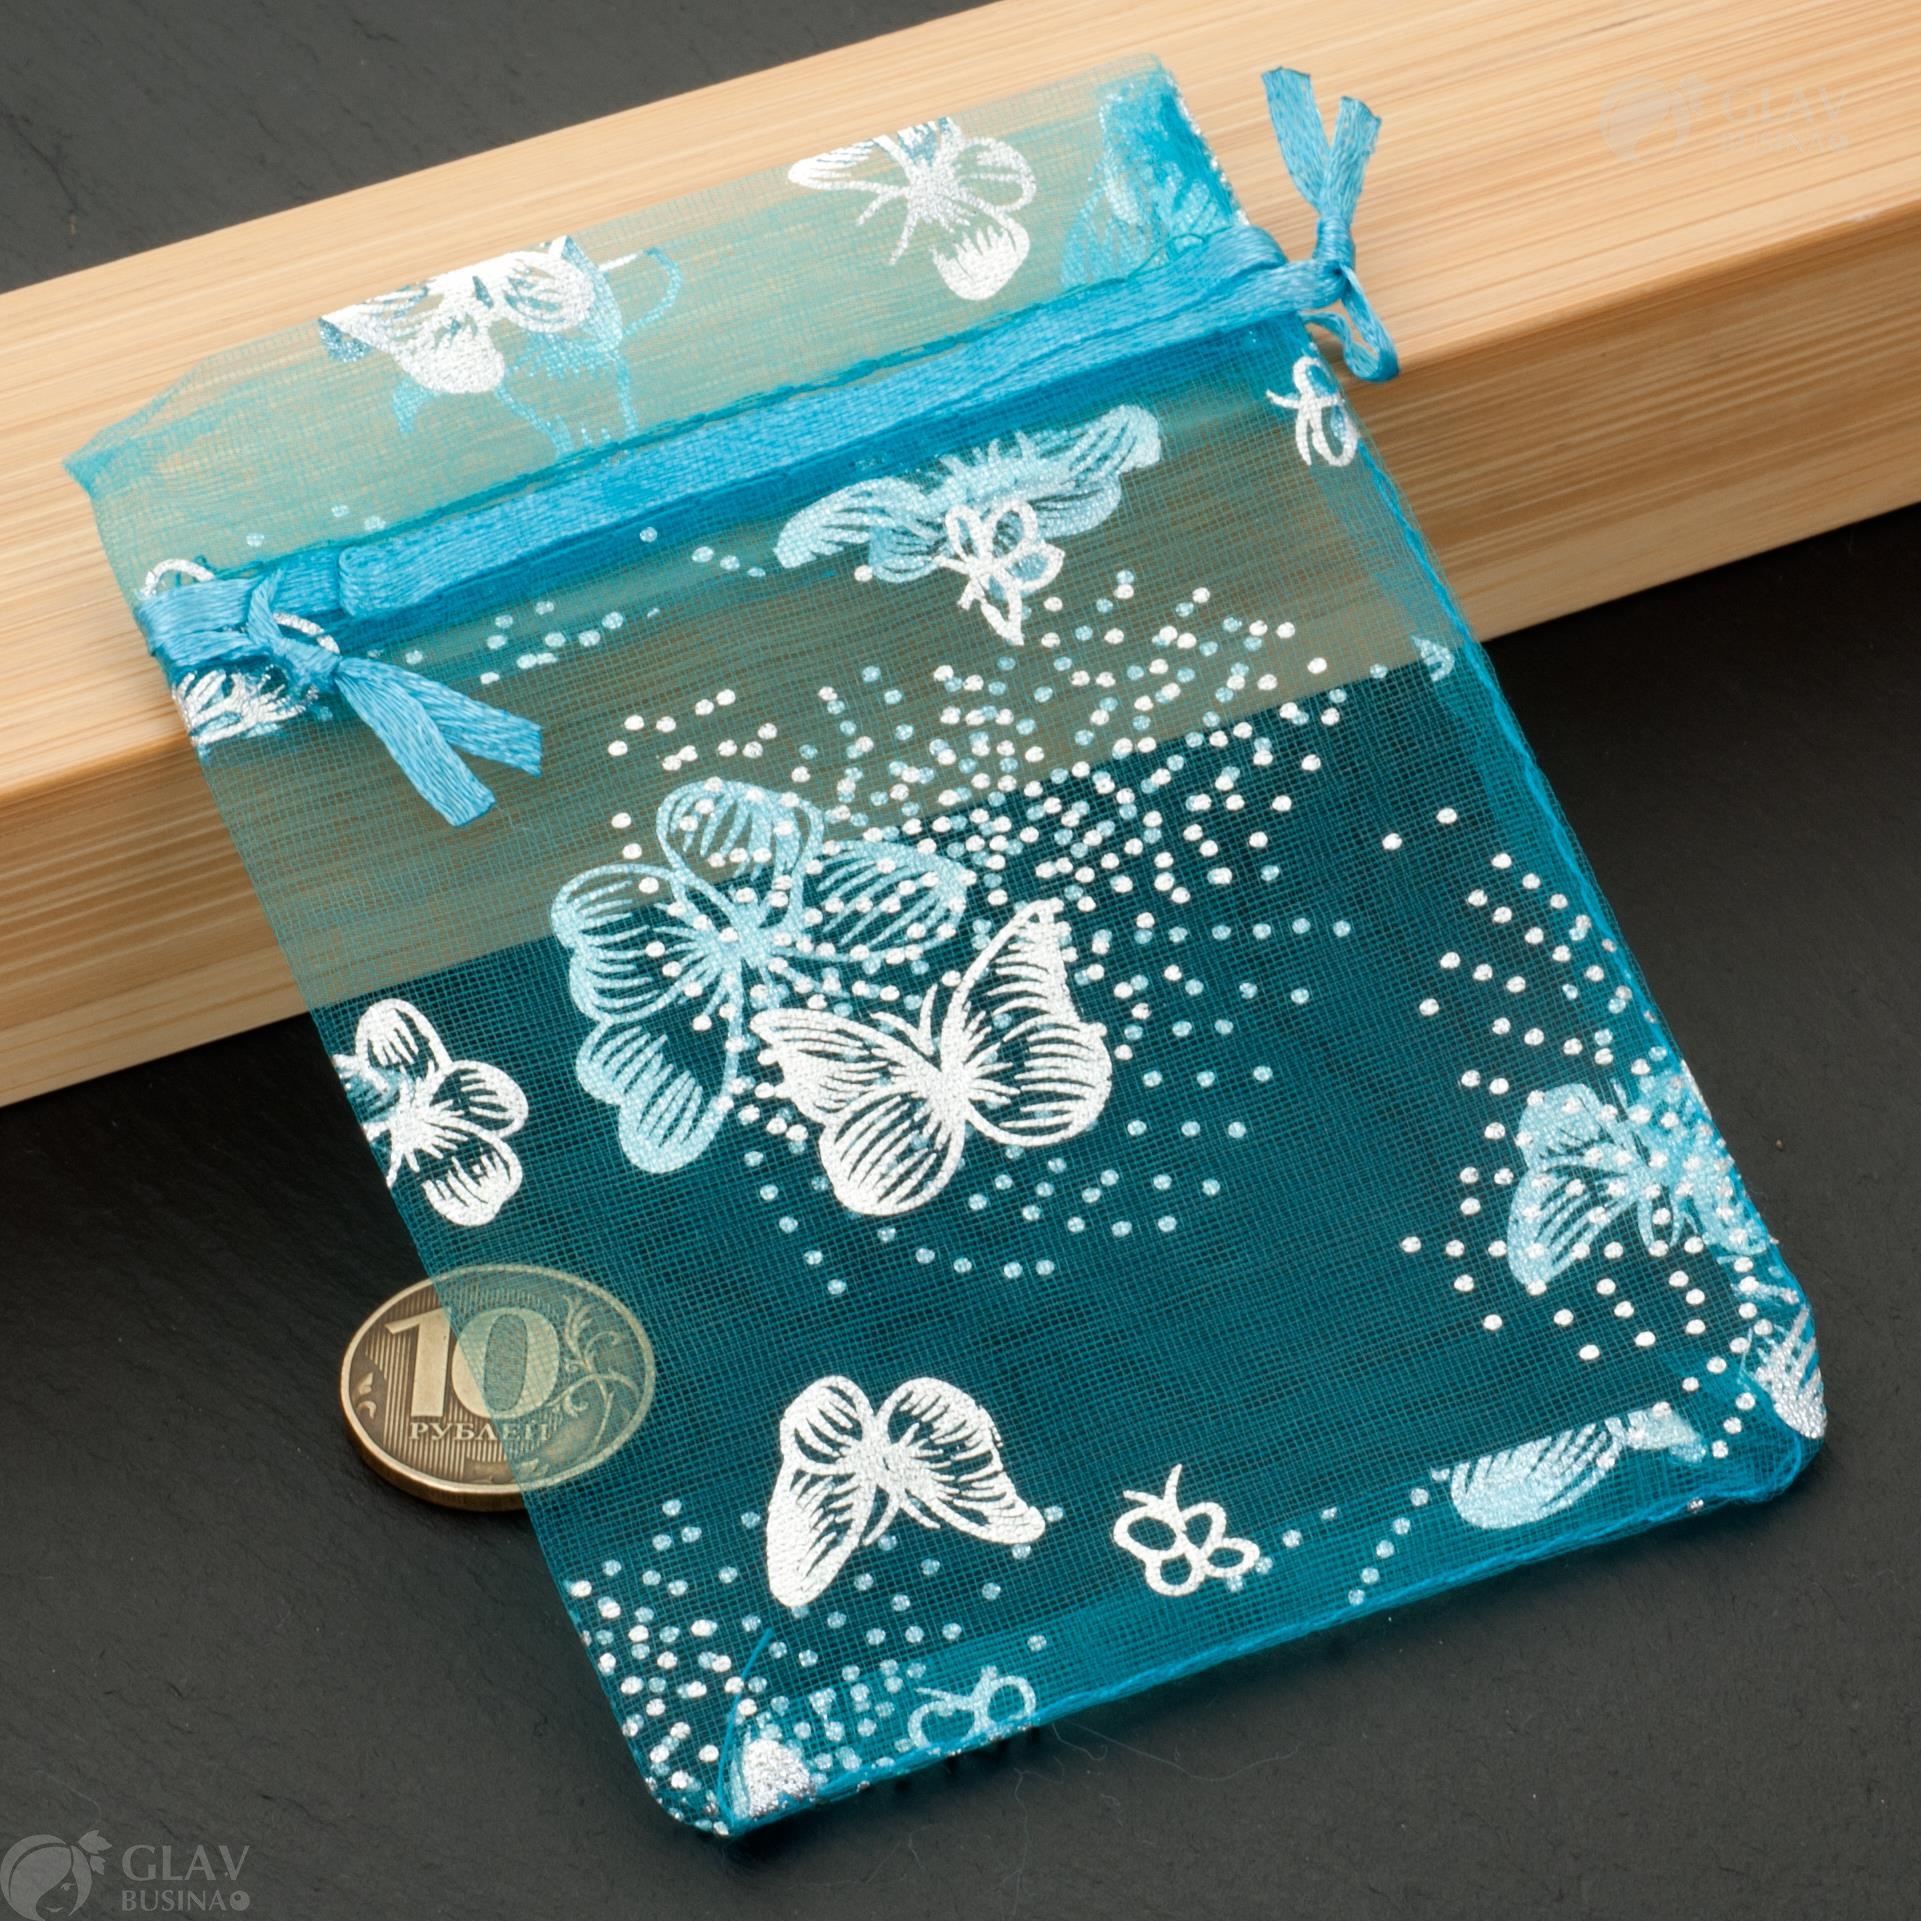 Голубые мешочки из органзы с серебристыми бабочками, размером 9х12 см, идеальны для подарков и украшений.